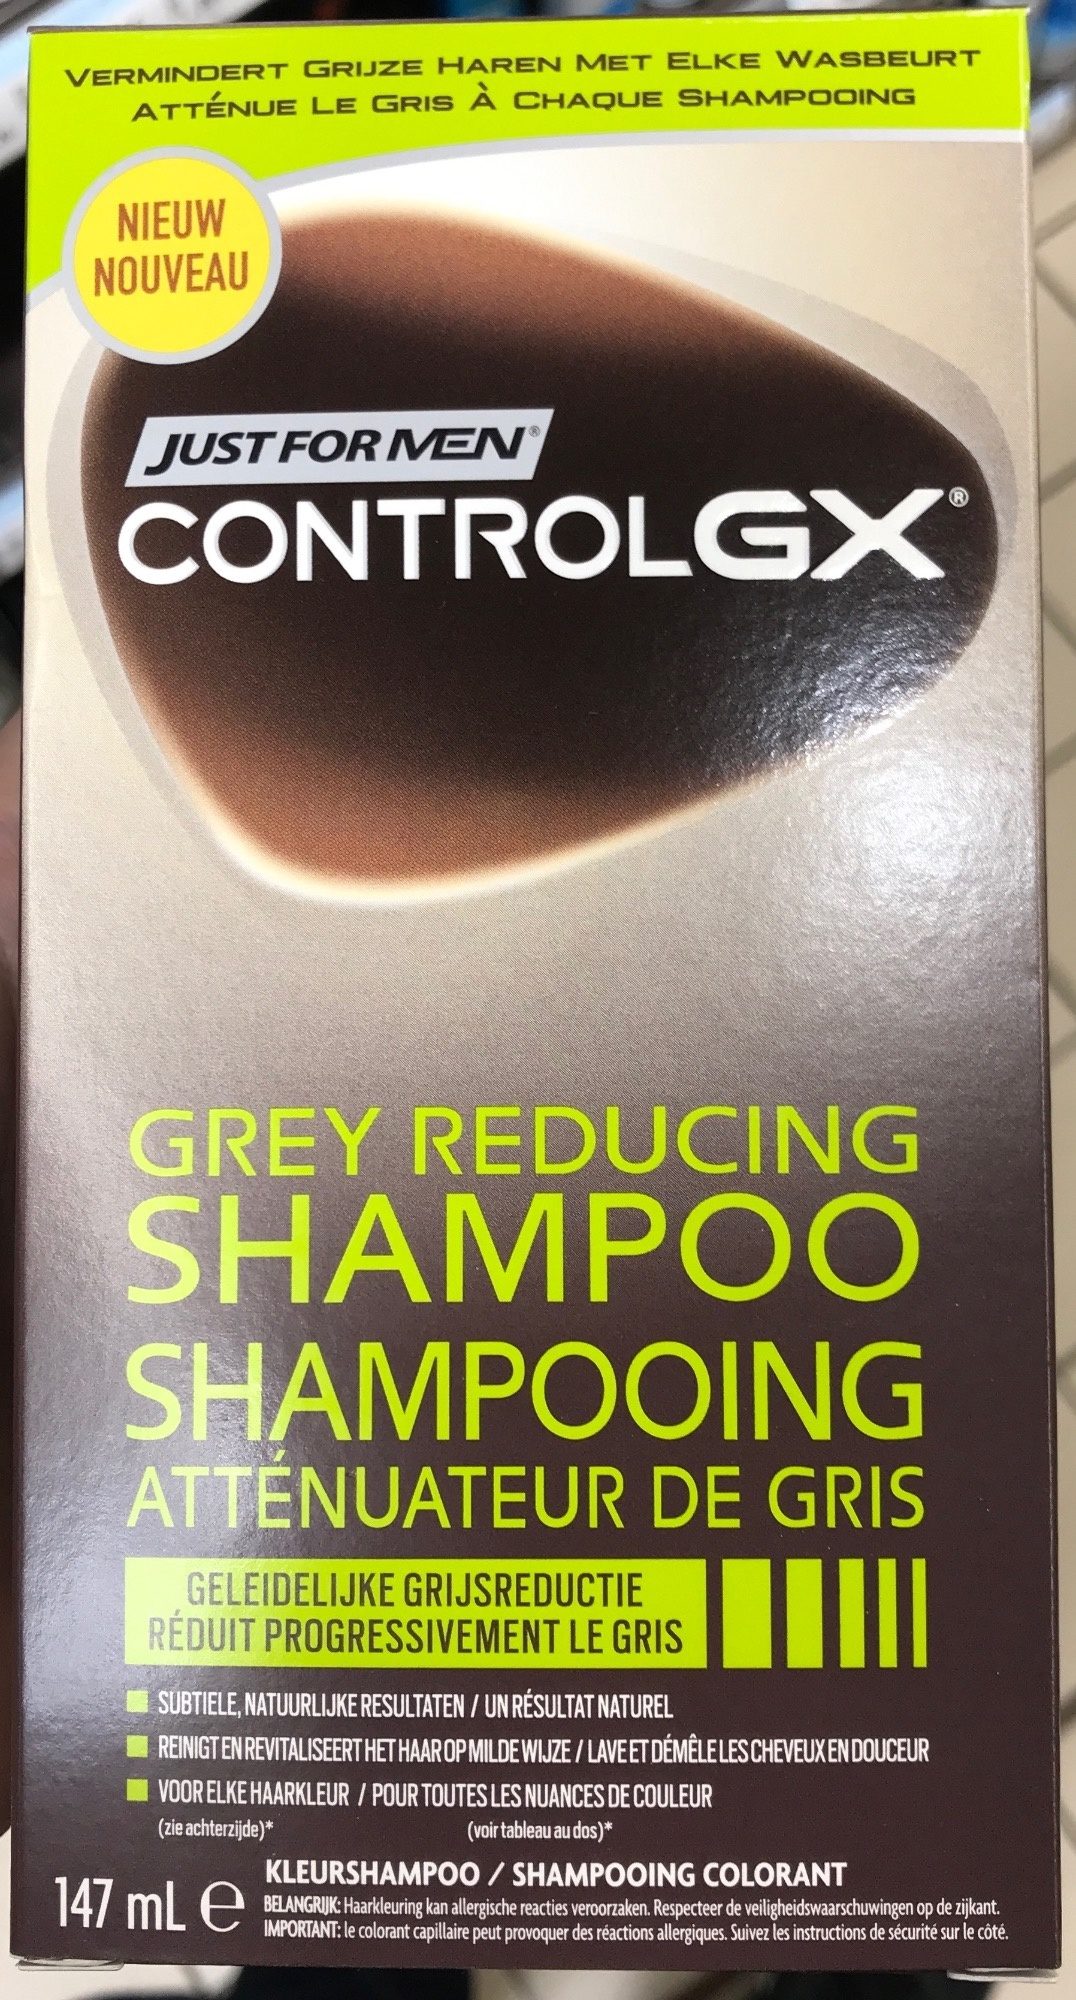 Control GX Shampooing atténuateur de gris - Product - fr